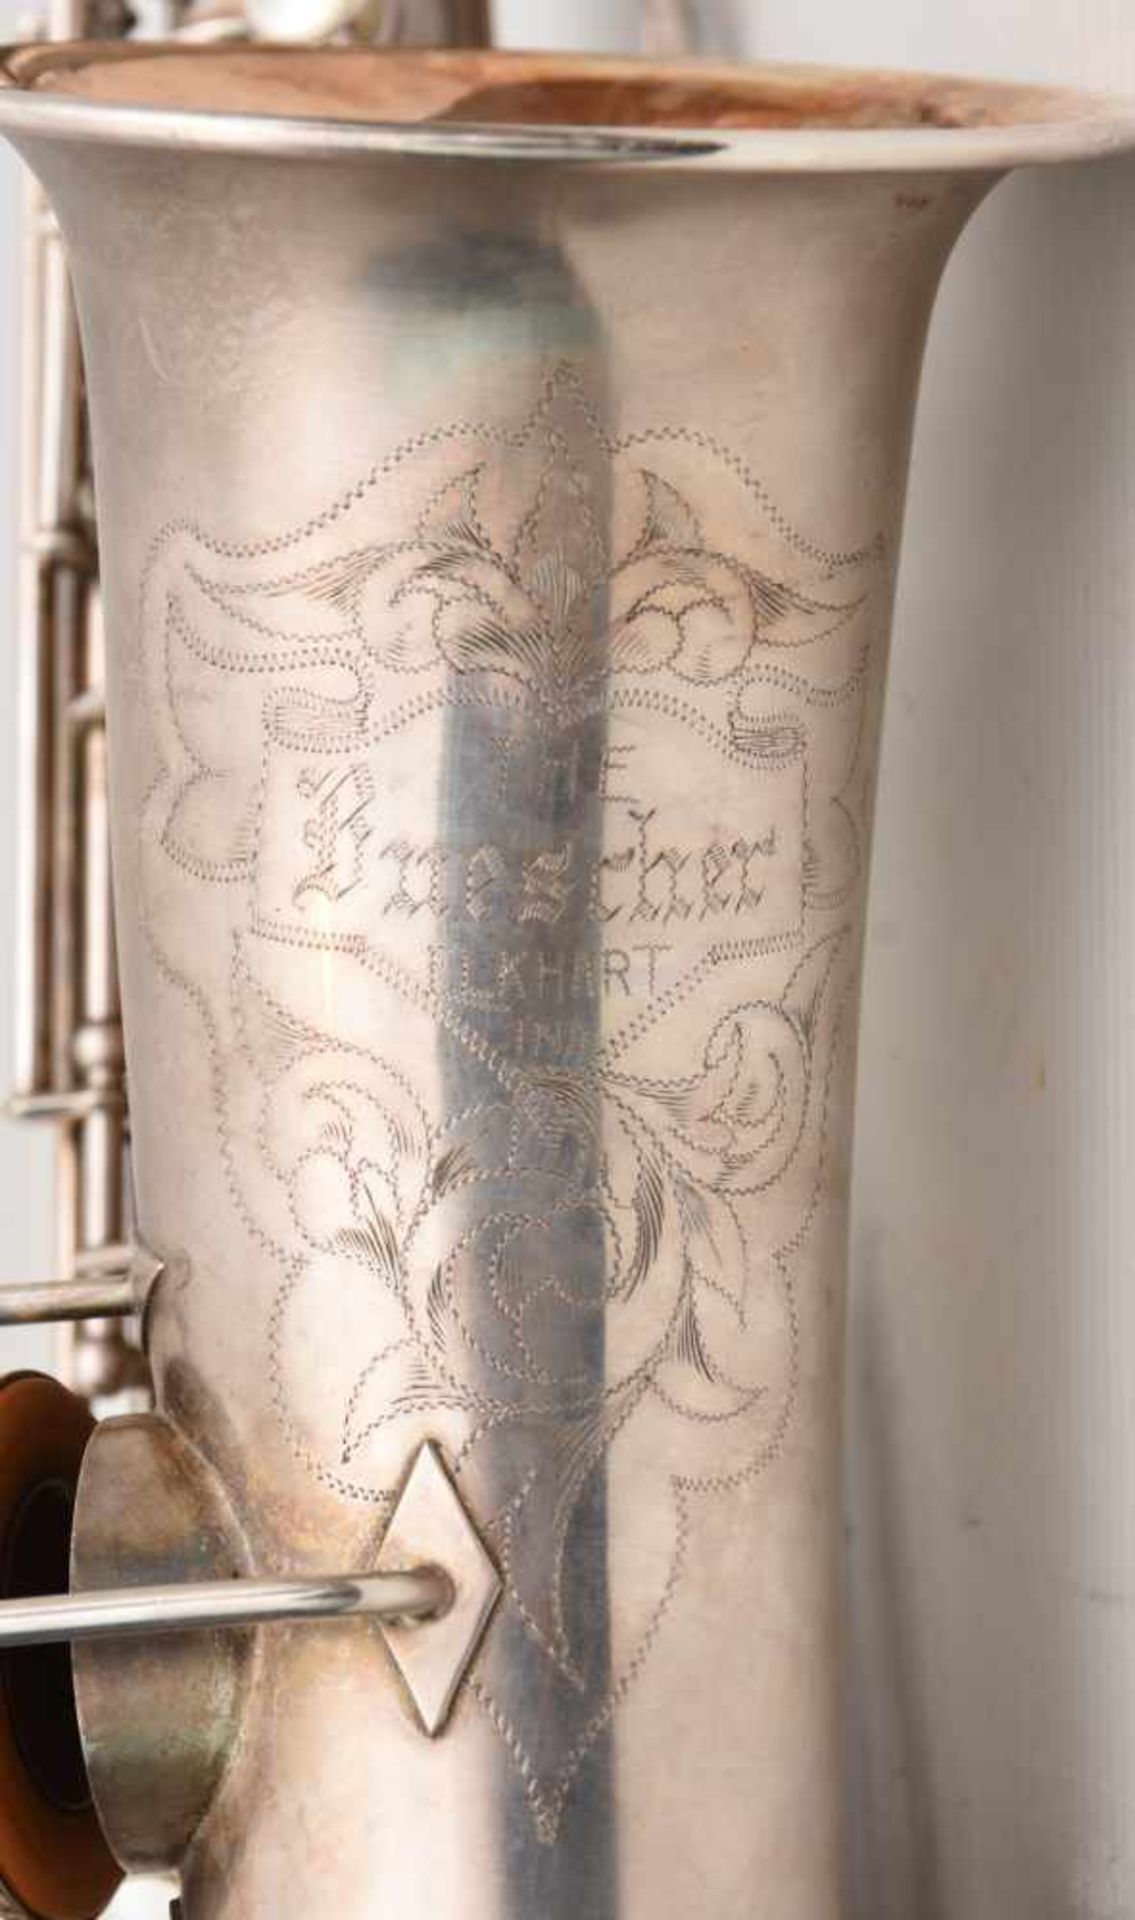 SAXOPHONE MIT KASTEN UND ZUBEHÖR, bez. "the buescher elkhart ind saxophone" nummeriert 163912. d. 12 - Bild 8 aus 9